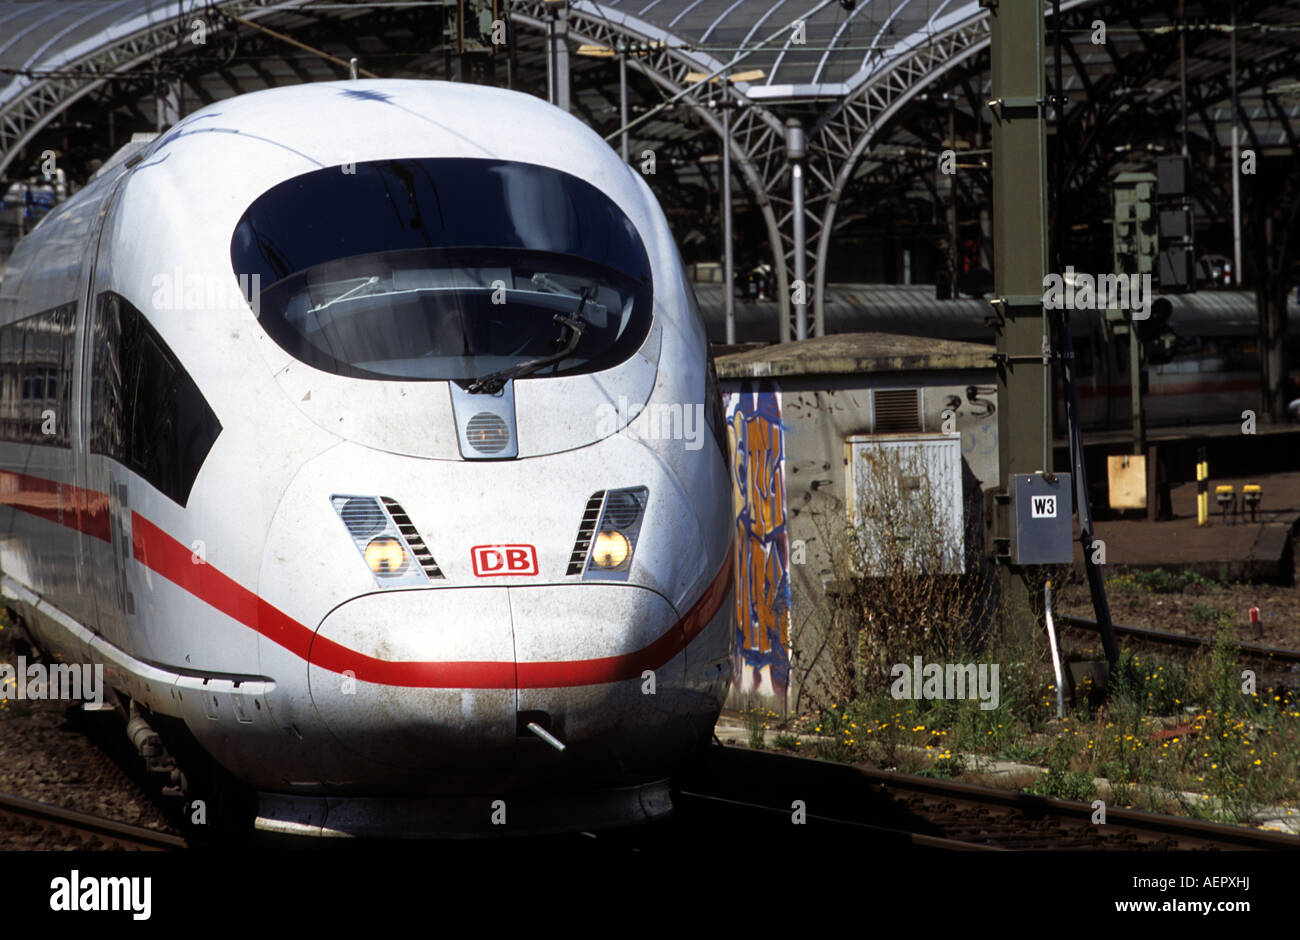 Die Deutsche Bahn High-Speed-express Personenzug, Köln, Nordrhein-Westfalen, Deutschland. Stockfoto